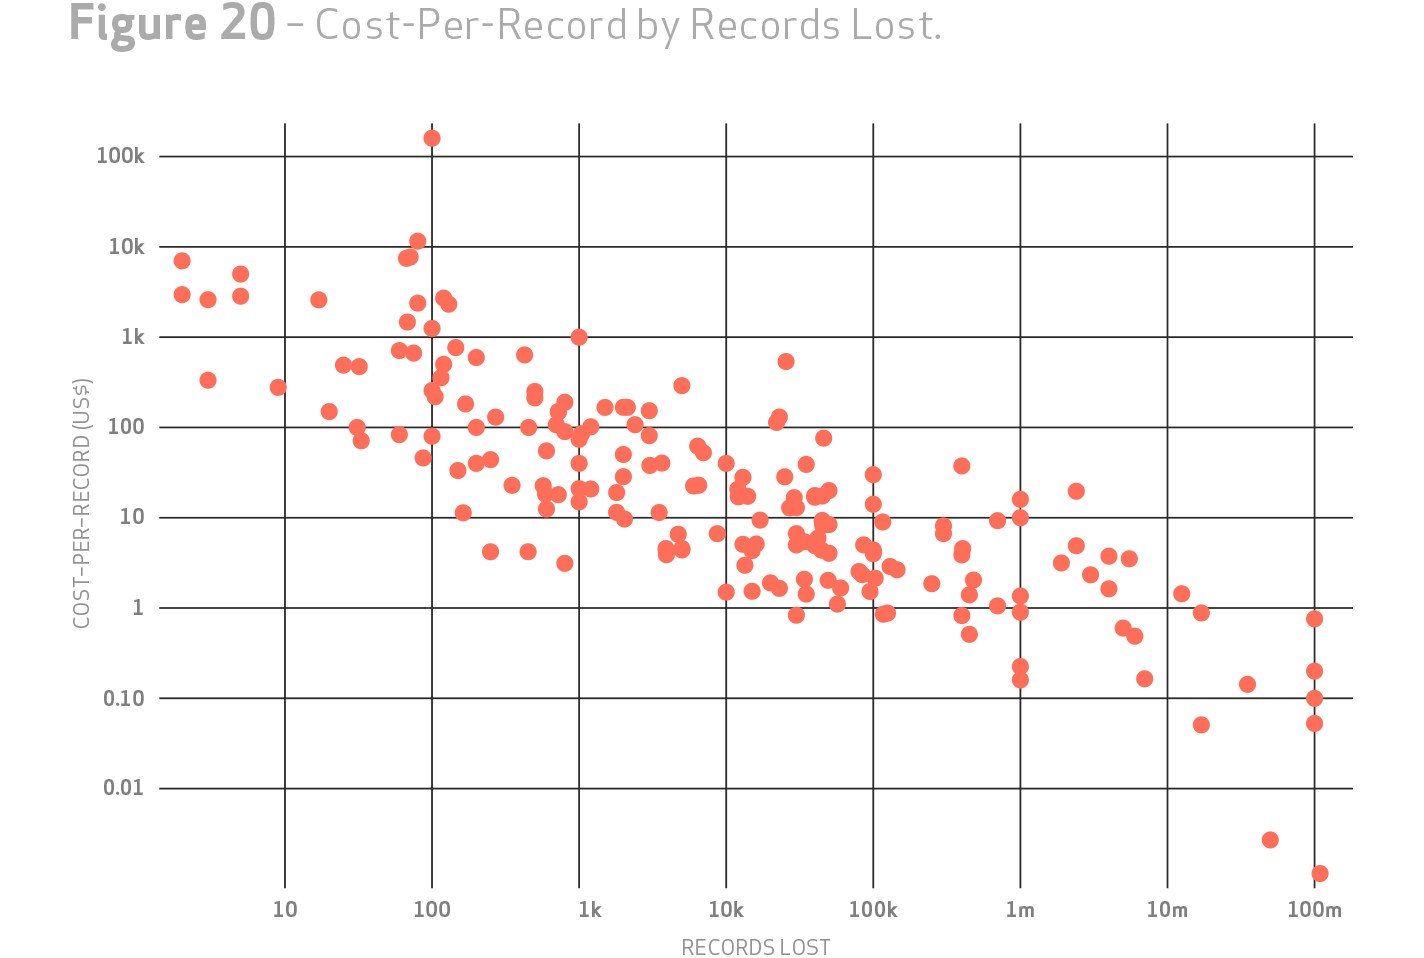 grafik verizon cost-per-record by records lost